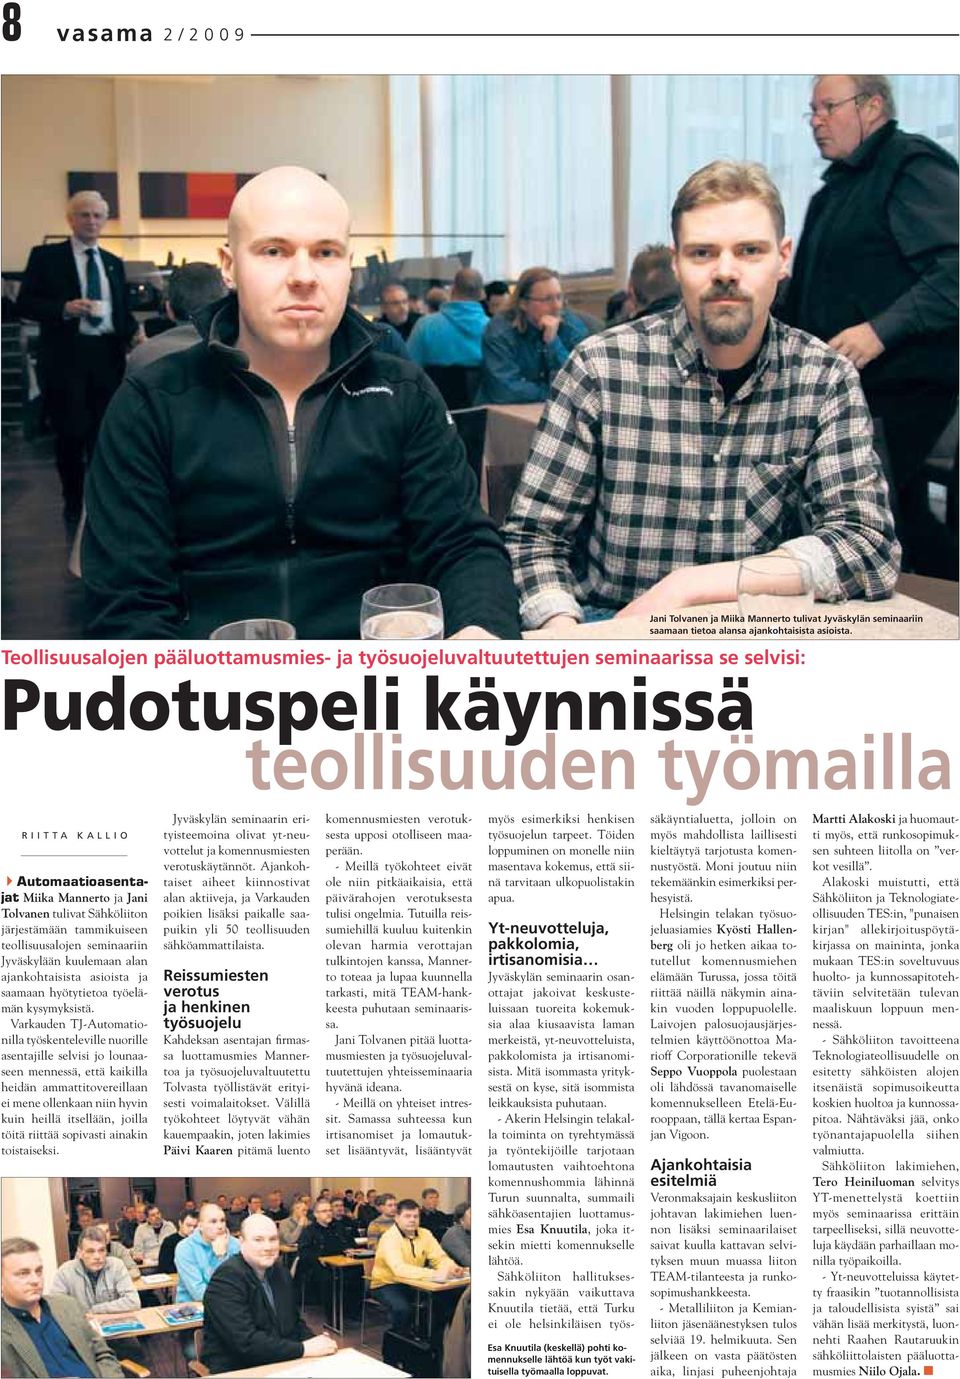 tulivat Sähköliiton järjestämään tammikuiseen teollisuusalojen seminaariin Jyväskylään kuulemaan alan ajankohtaisista asioista ja saamaan hyötytietoa työelämän kysymyksistä.